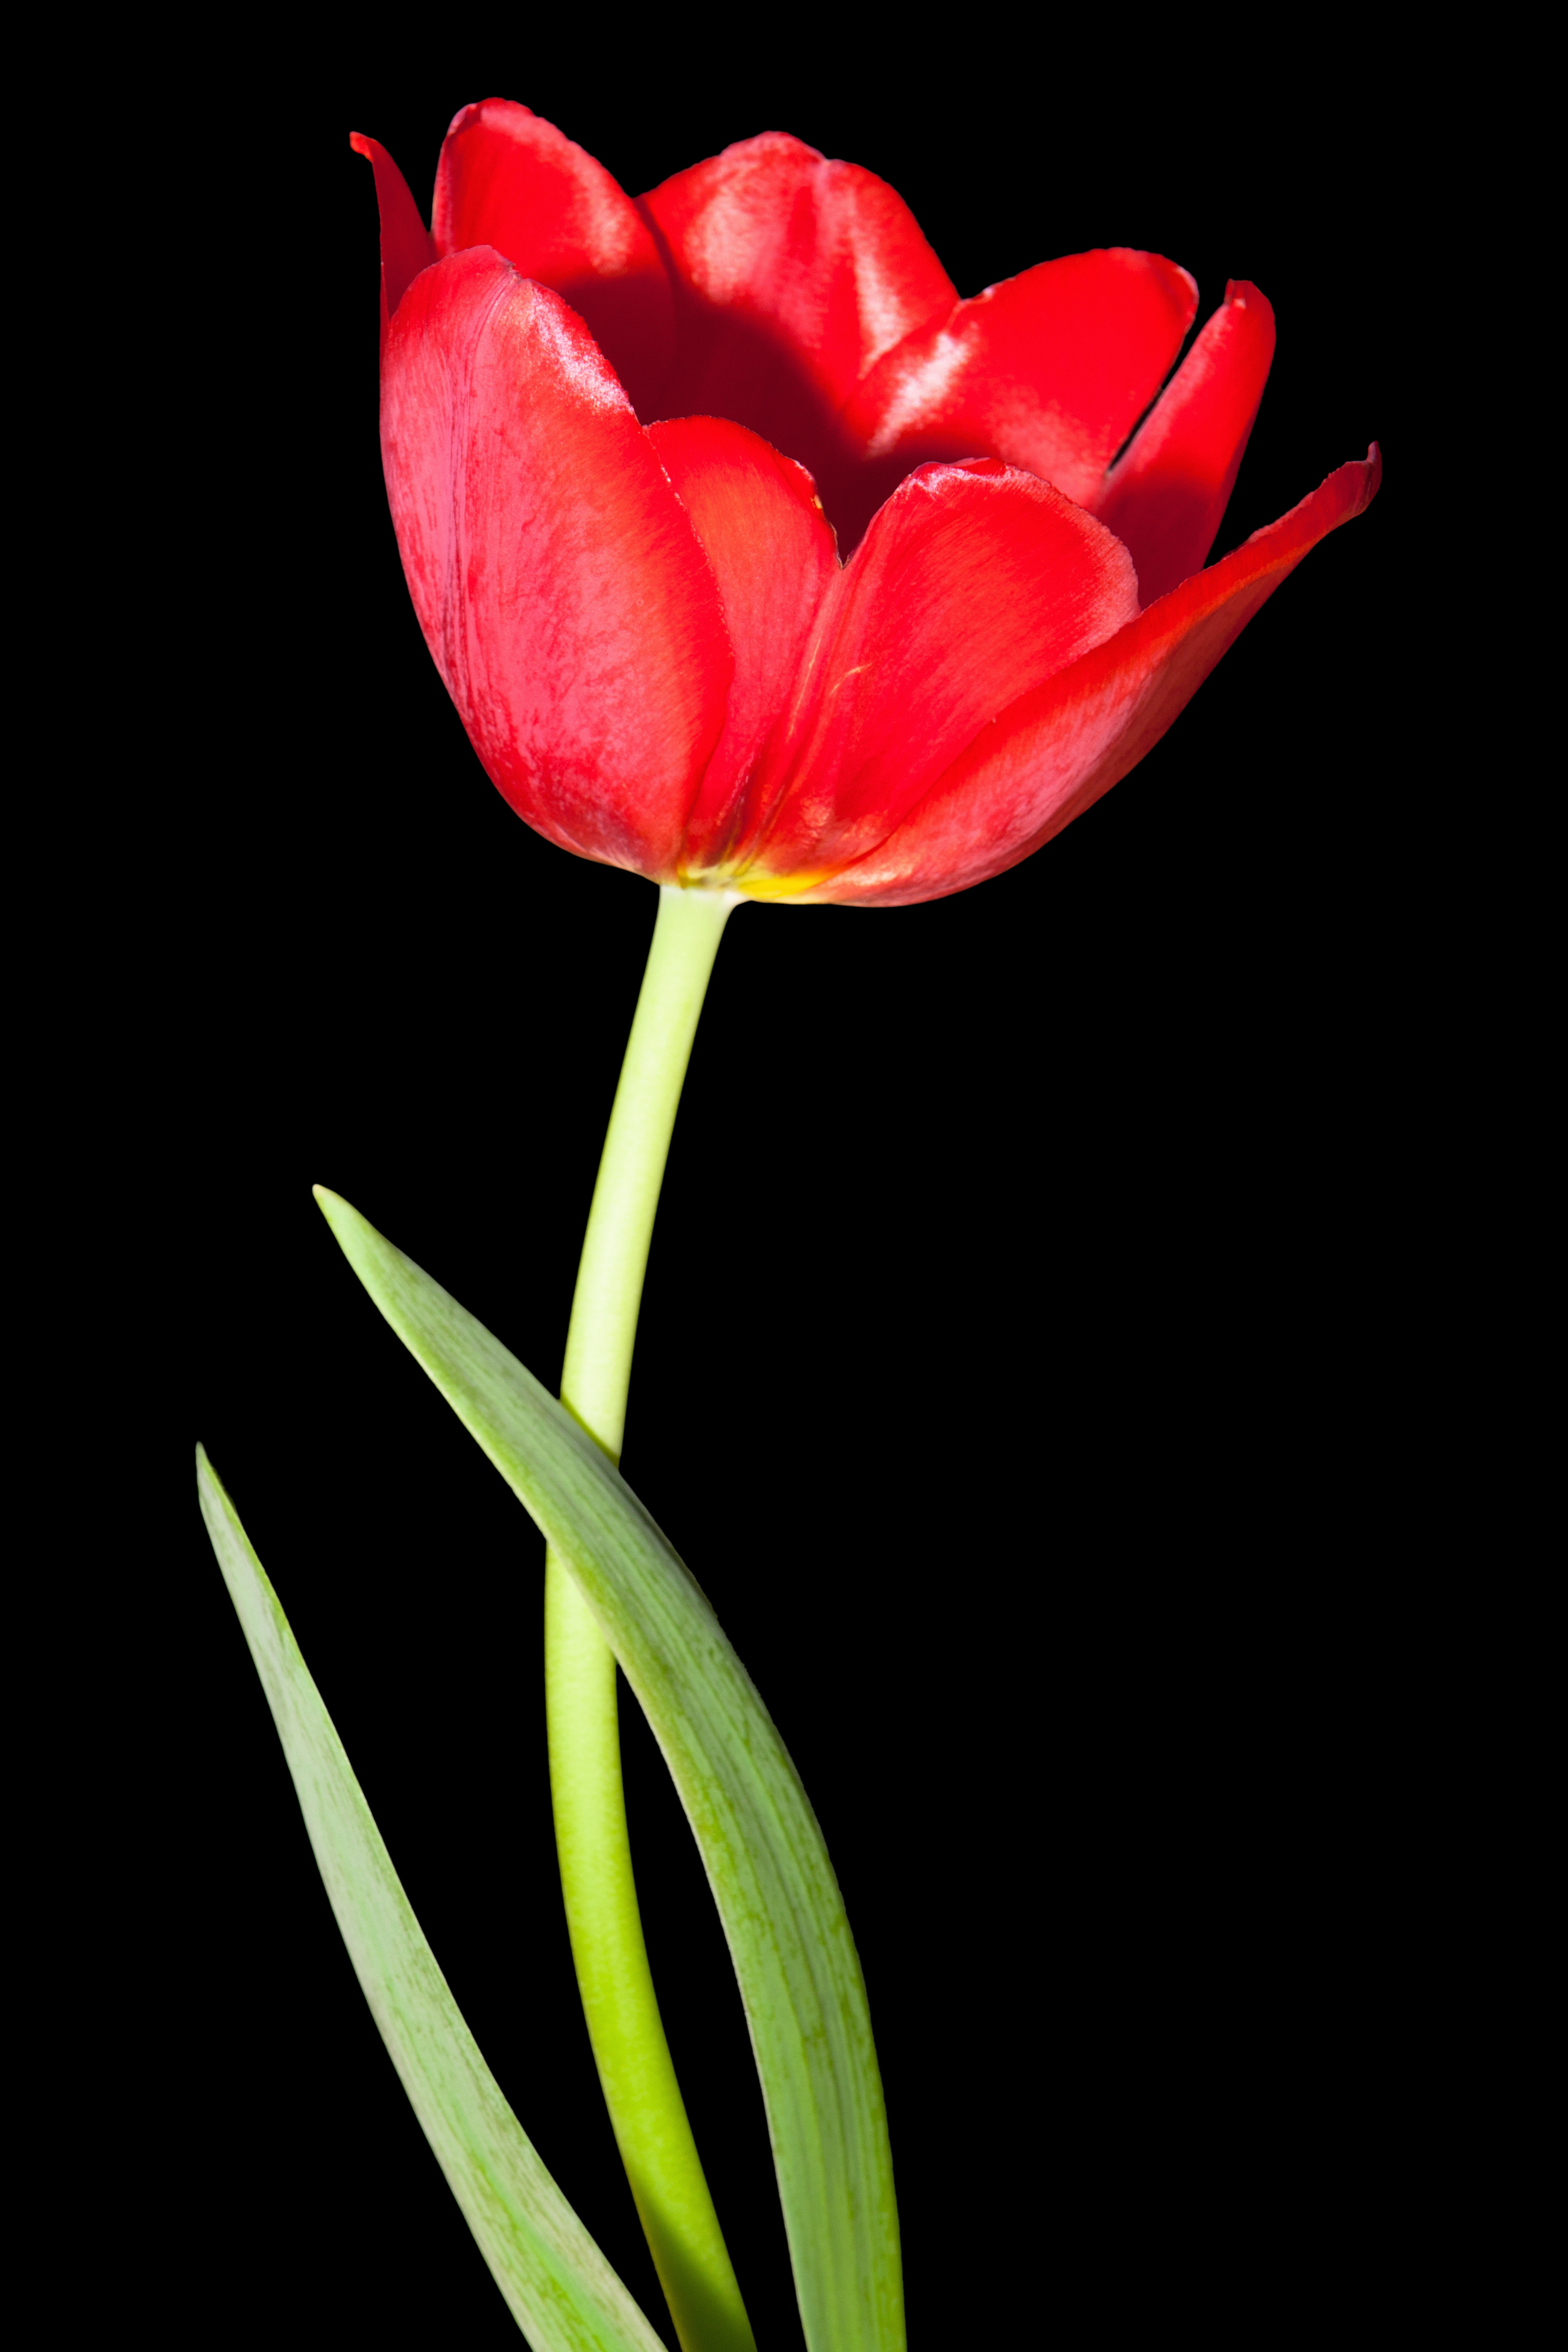 Red tulip photo